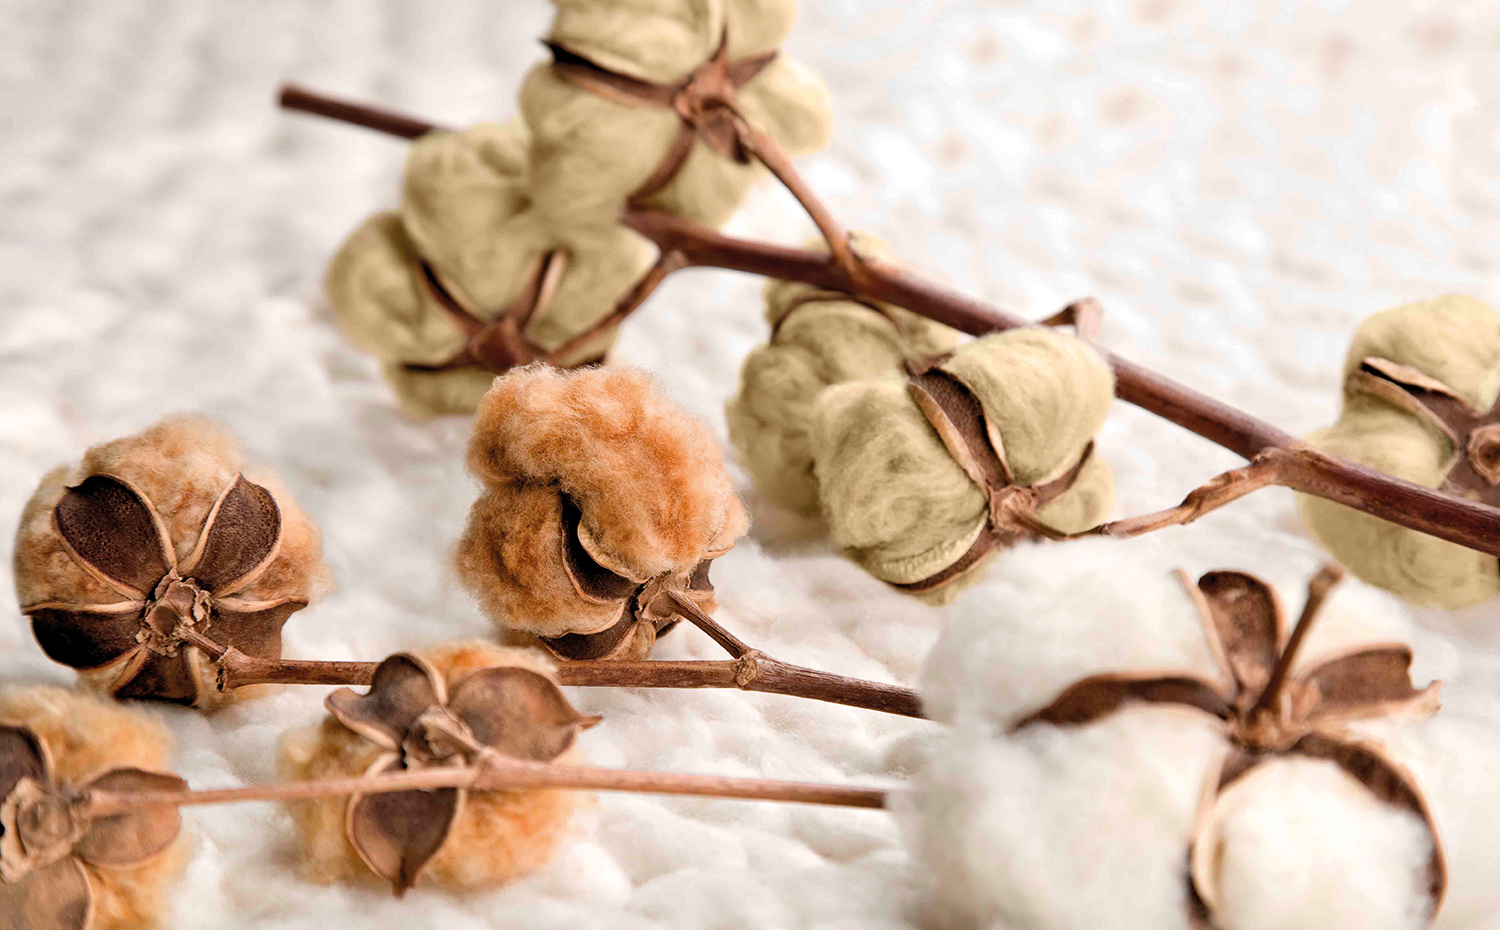 03. Algodon colorido. La empresa Organic Cotton Colours ha recuperado las semillas tradicionales de algodón verde y marrón para ofrecer tejidos de color libres de tintes